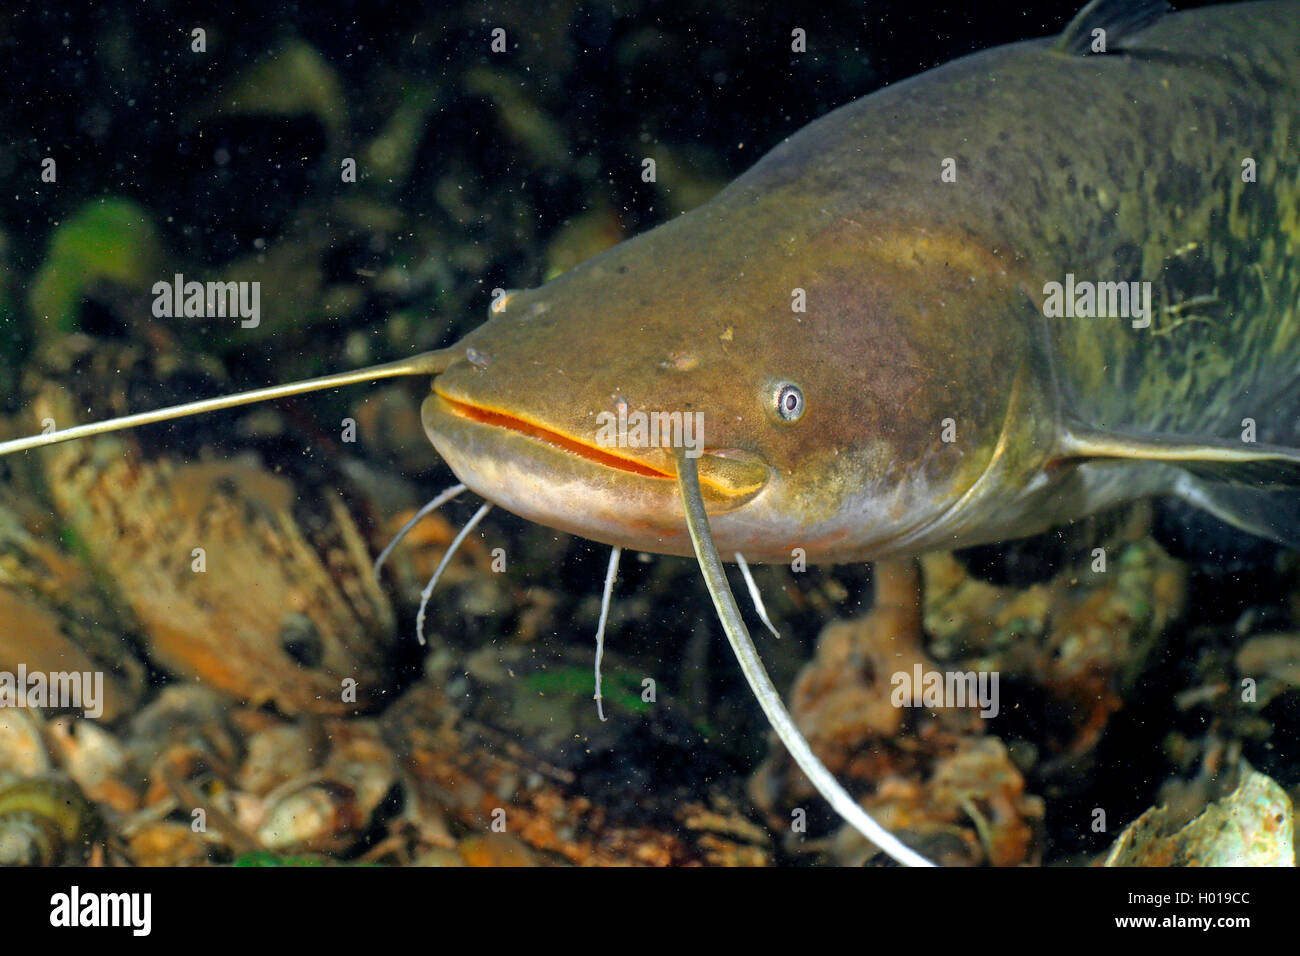 European catfish, wels, sheatfish, wels catfish (Silurus glanis), Portrait, Romania, Danube Delta Stock Photo